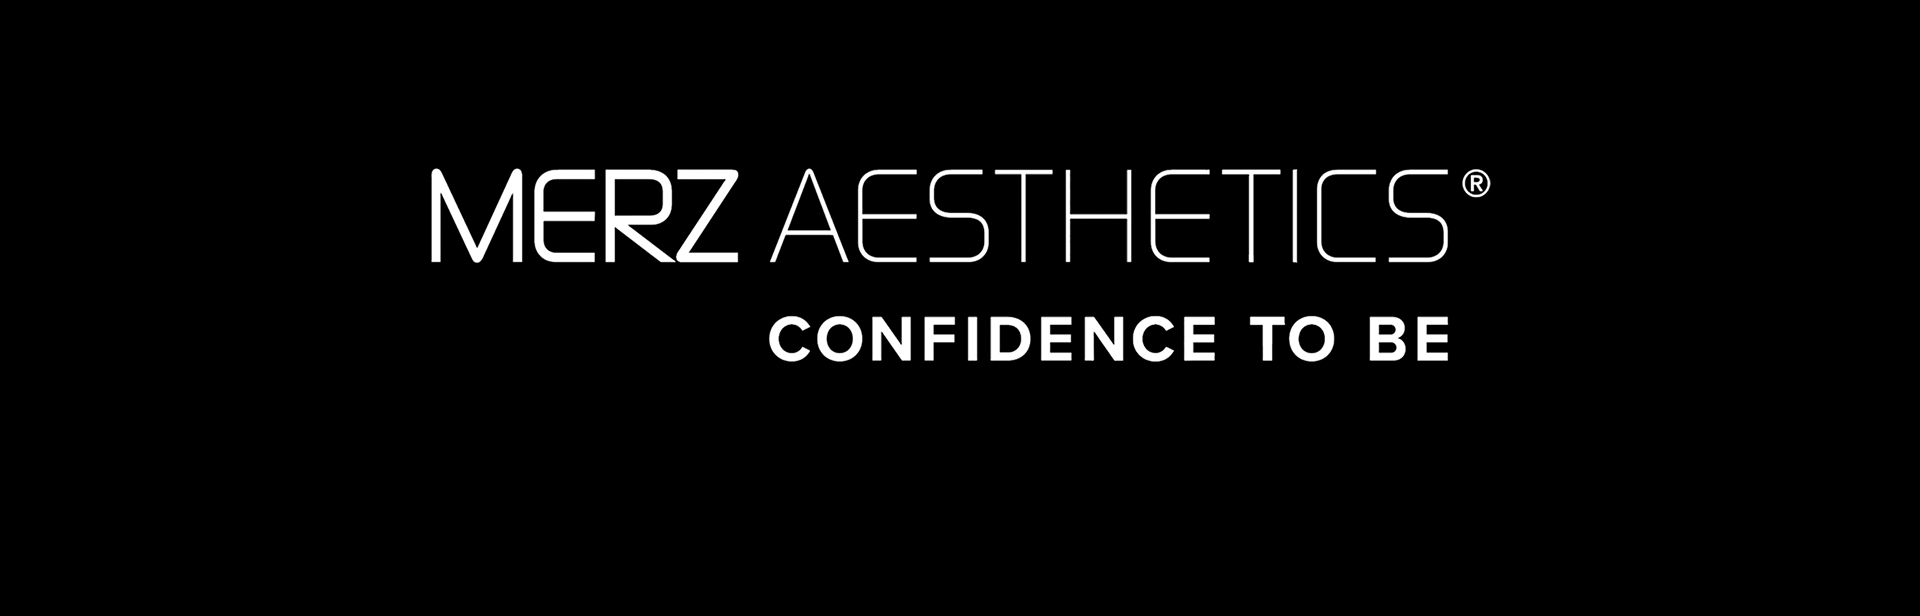 merz aesthetics logo with tagline